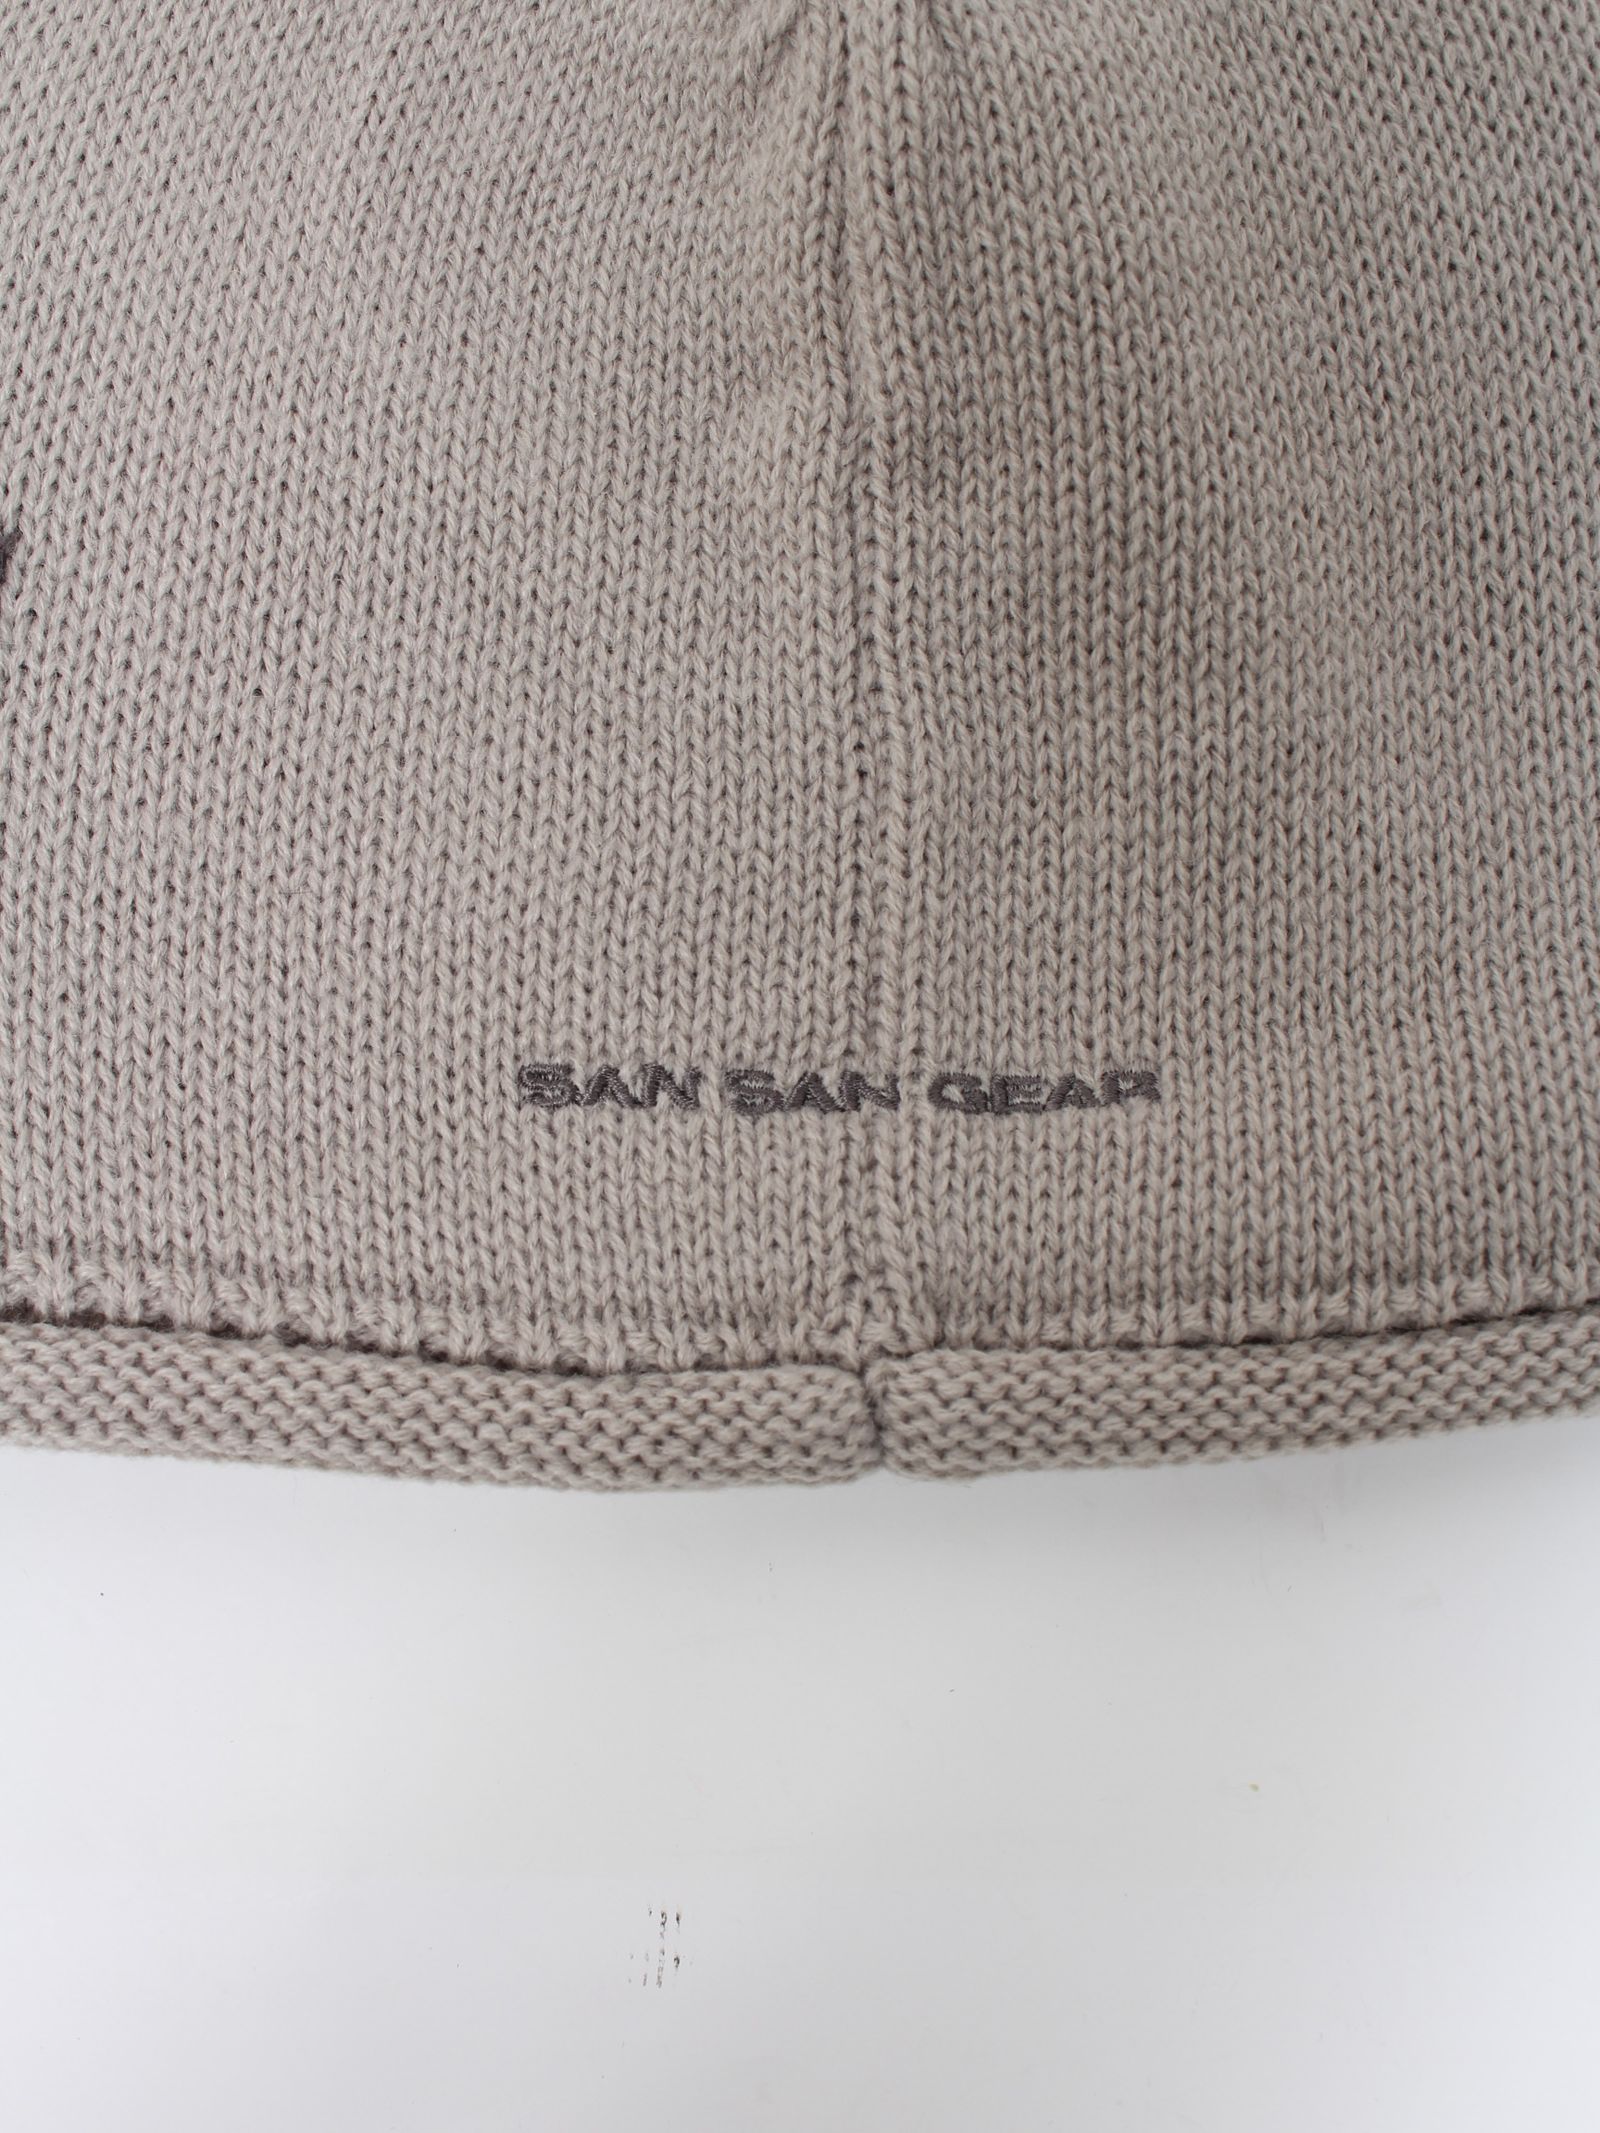 SAN SAN GEAR - 【24SS】ロゴ ビーニー / LOGO BEANIE / グレー | STORY